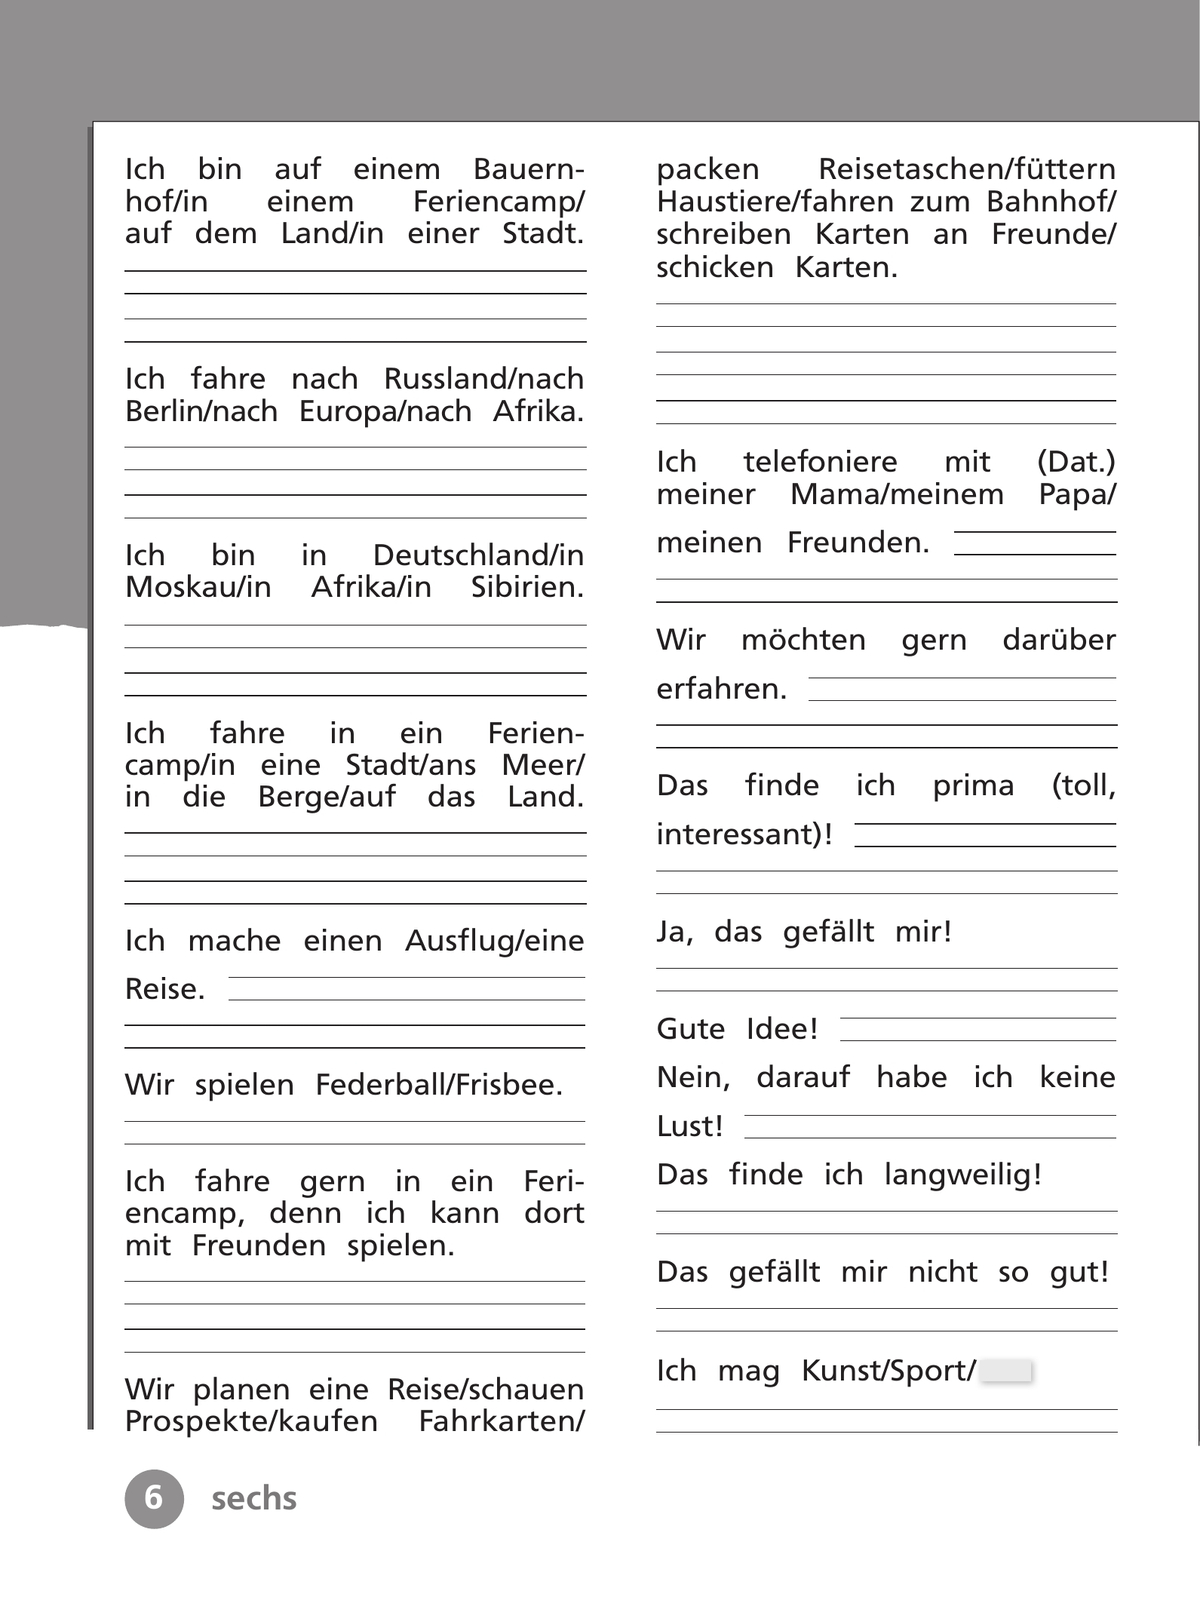 Немецкий язык. Рабочая тетрадь. 4 класс. В 2 ч. Часть 1 10